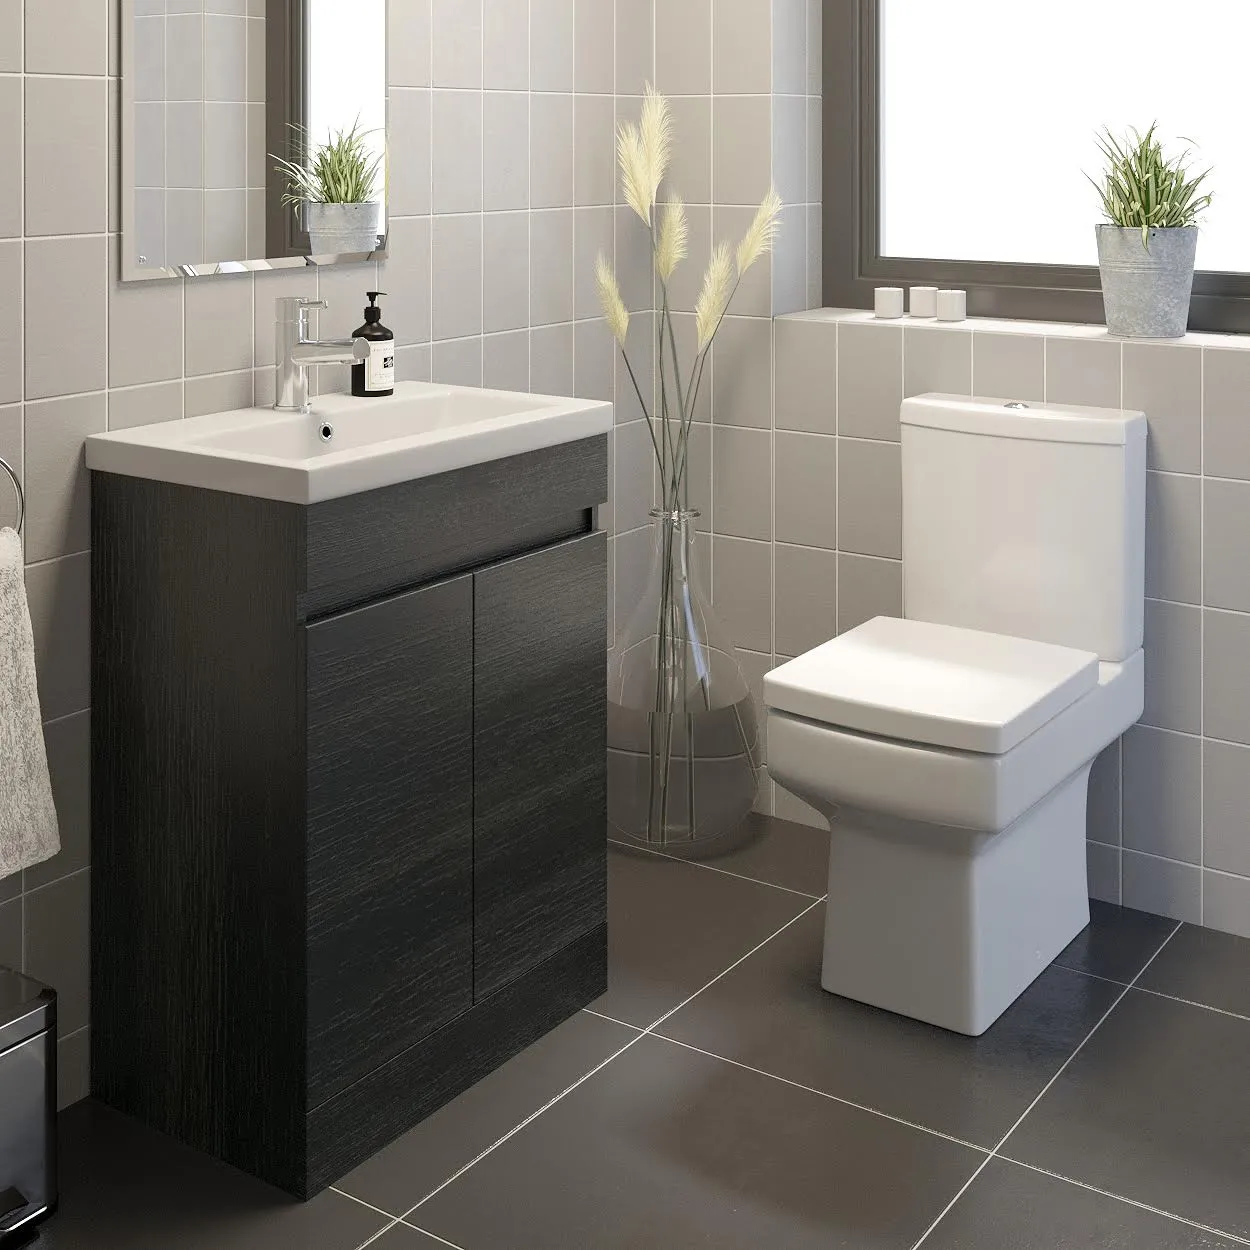 Royan Toilet & Artis Charcoal Grey Door Vanity Unit 600mm